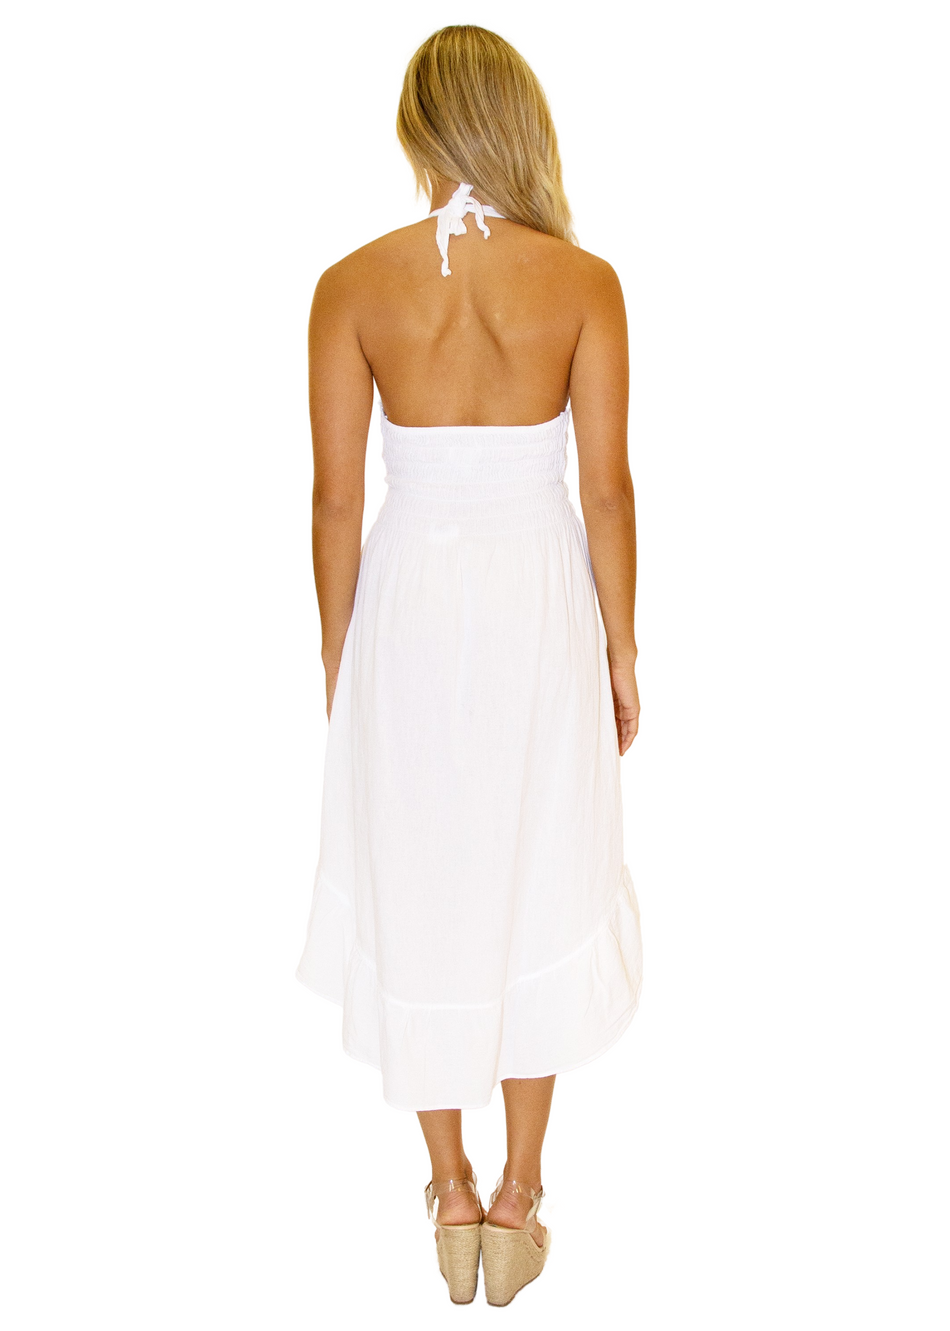 NW1169 - White Cotton Dress